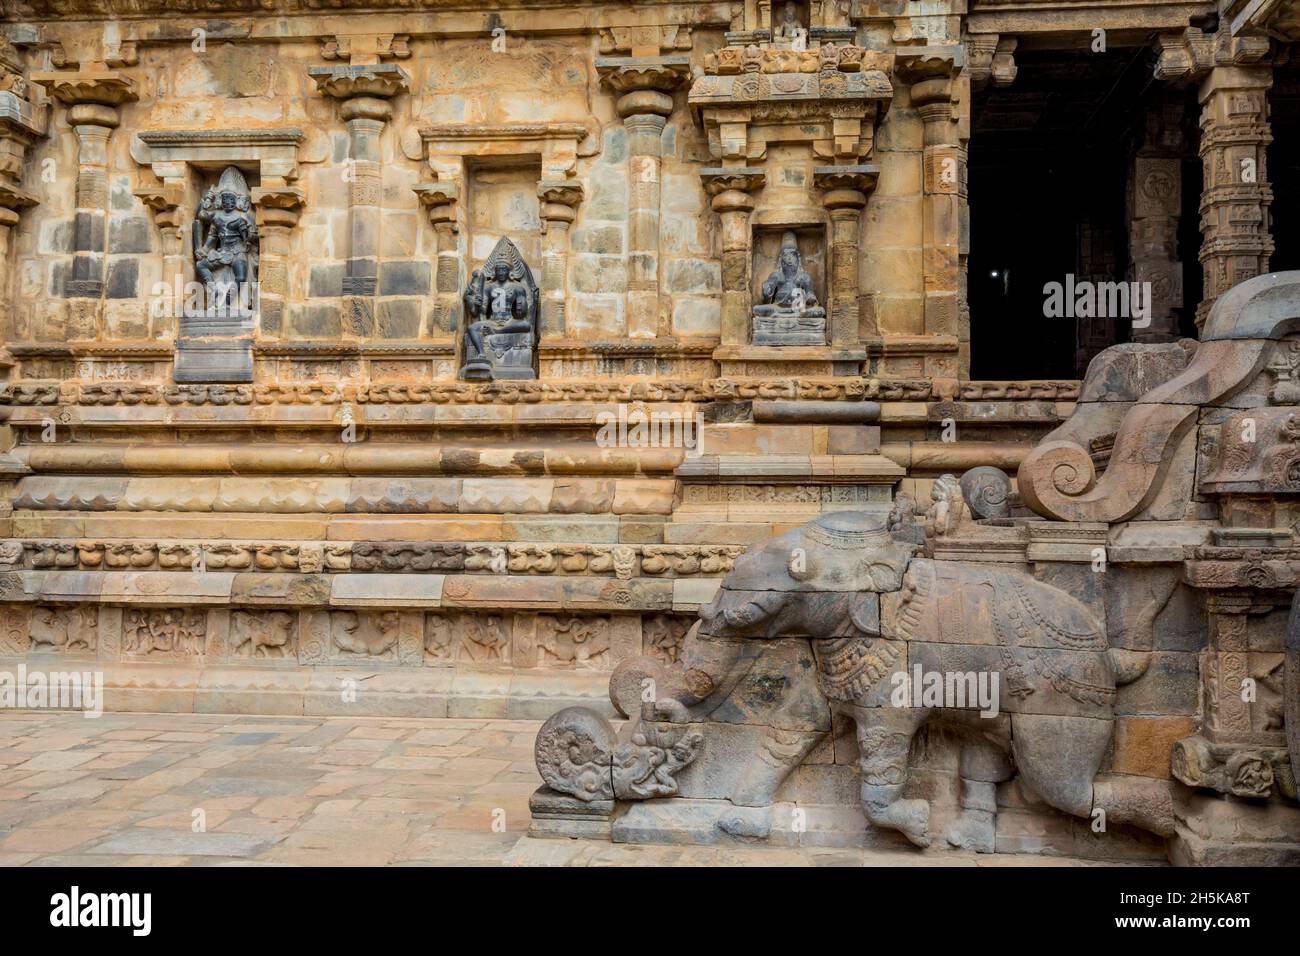 Drei Nischen mit hinduistischen Gottheiten in einer Wand und geschnitzte Elefantentreppe des Dravidian Chola-Ära Airavatesvara Temple; Darasuram, Tamil Nadu, Indien Stockfoto